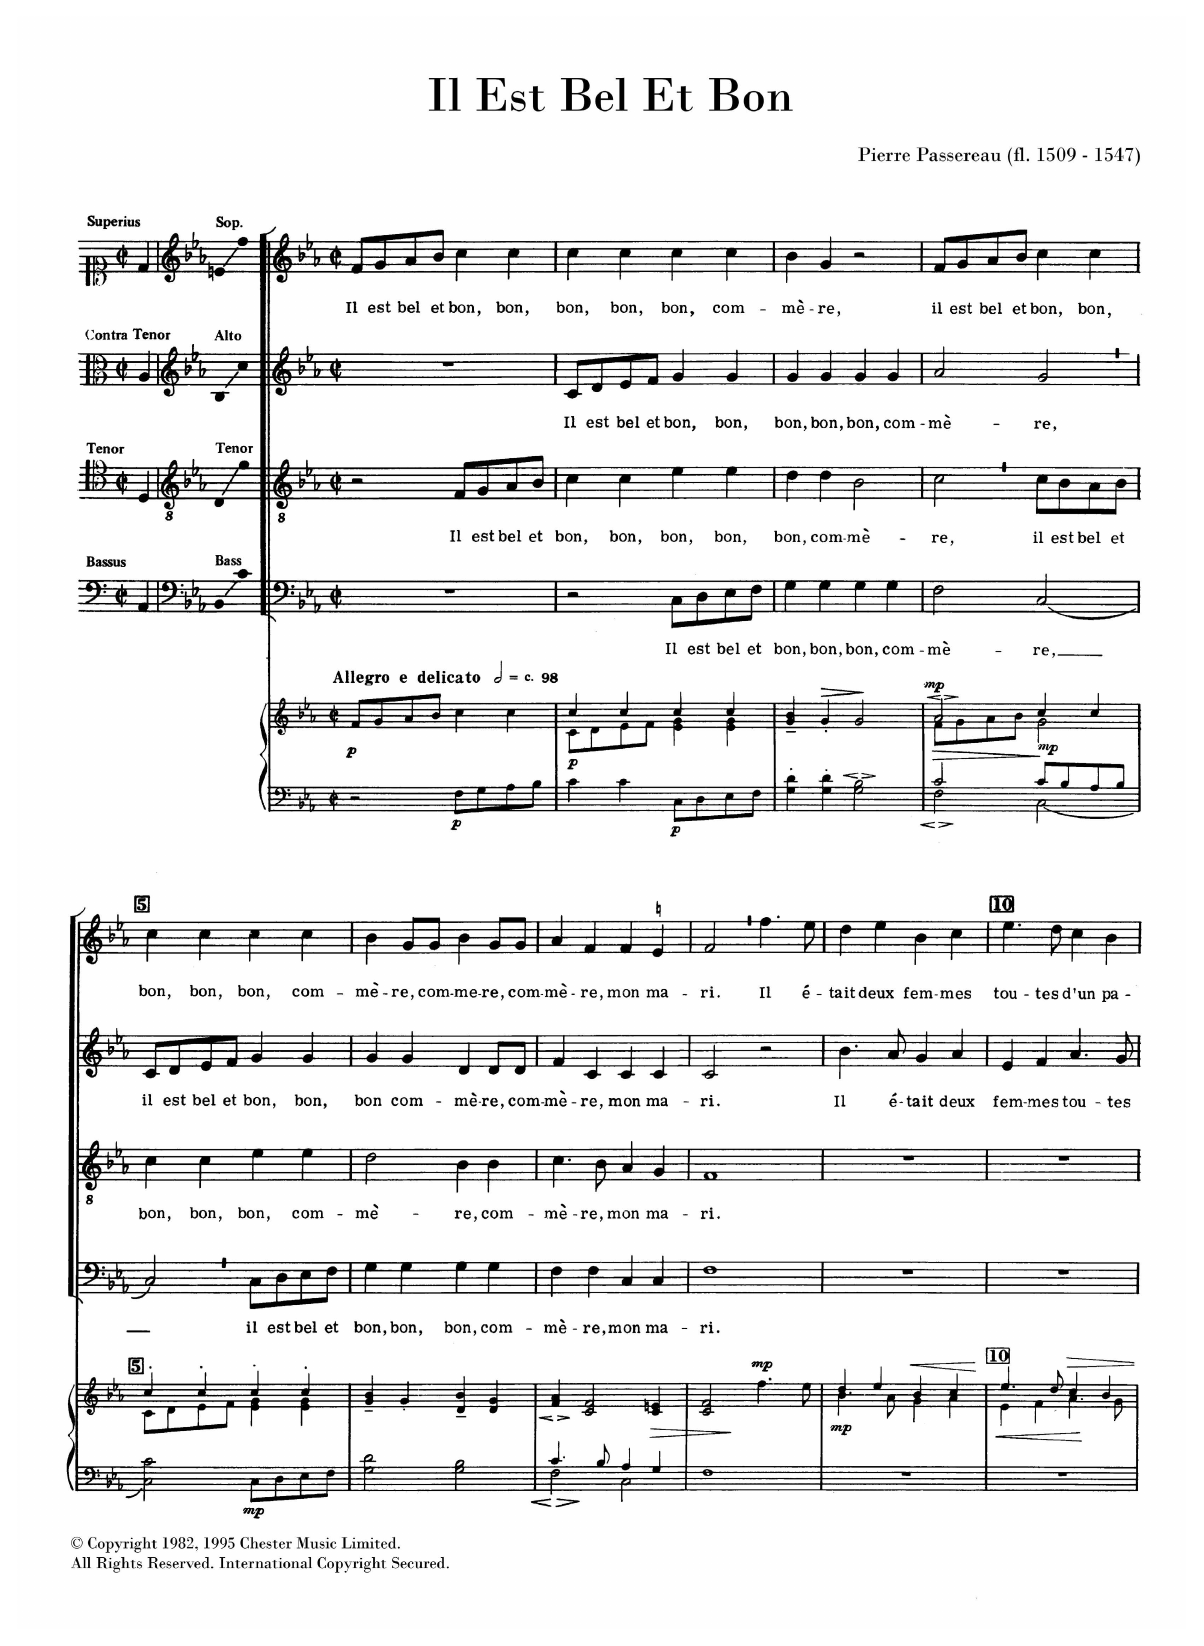 Pierre Passereau Il Est Bel Et Bon Sheet Music Notes & Chords for SATB Choir - Download or Print PDF